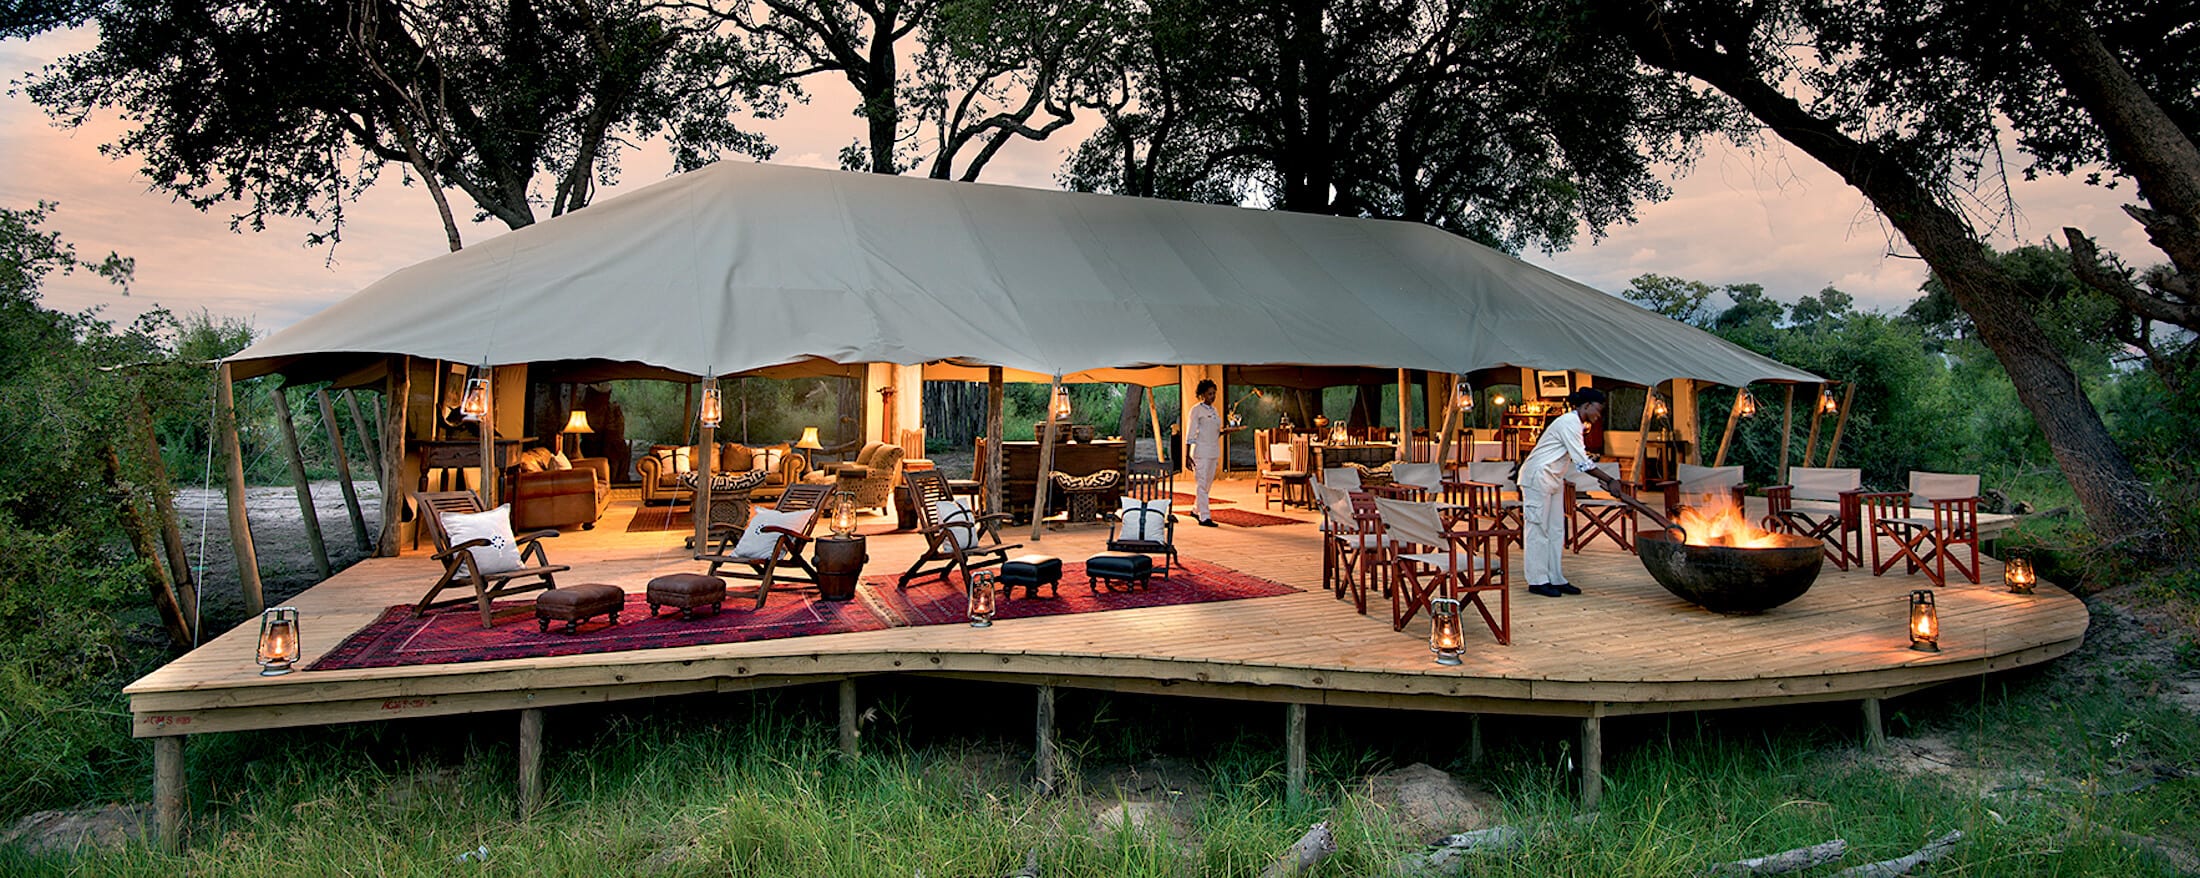 morgen meten Misschien Top-10] Best African Glamping Safari Lodges For 2021